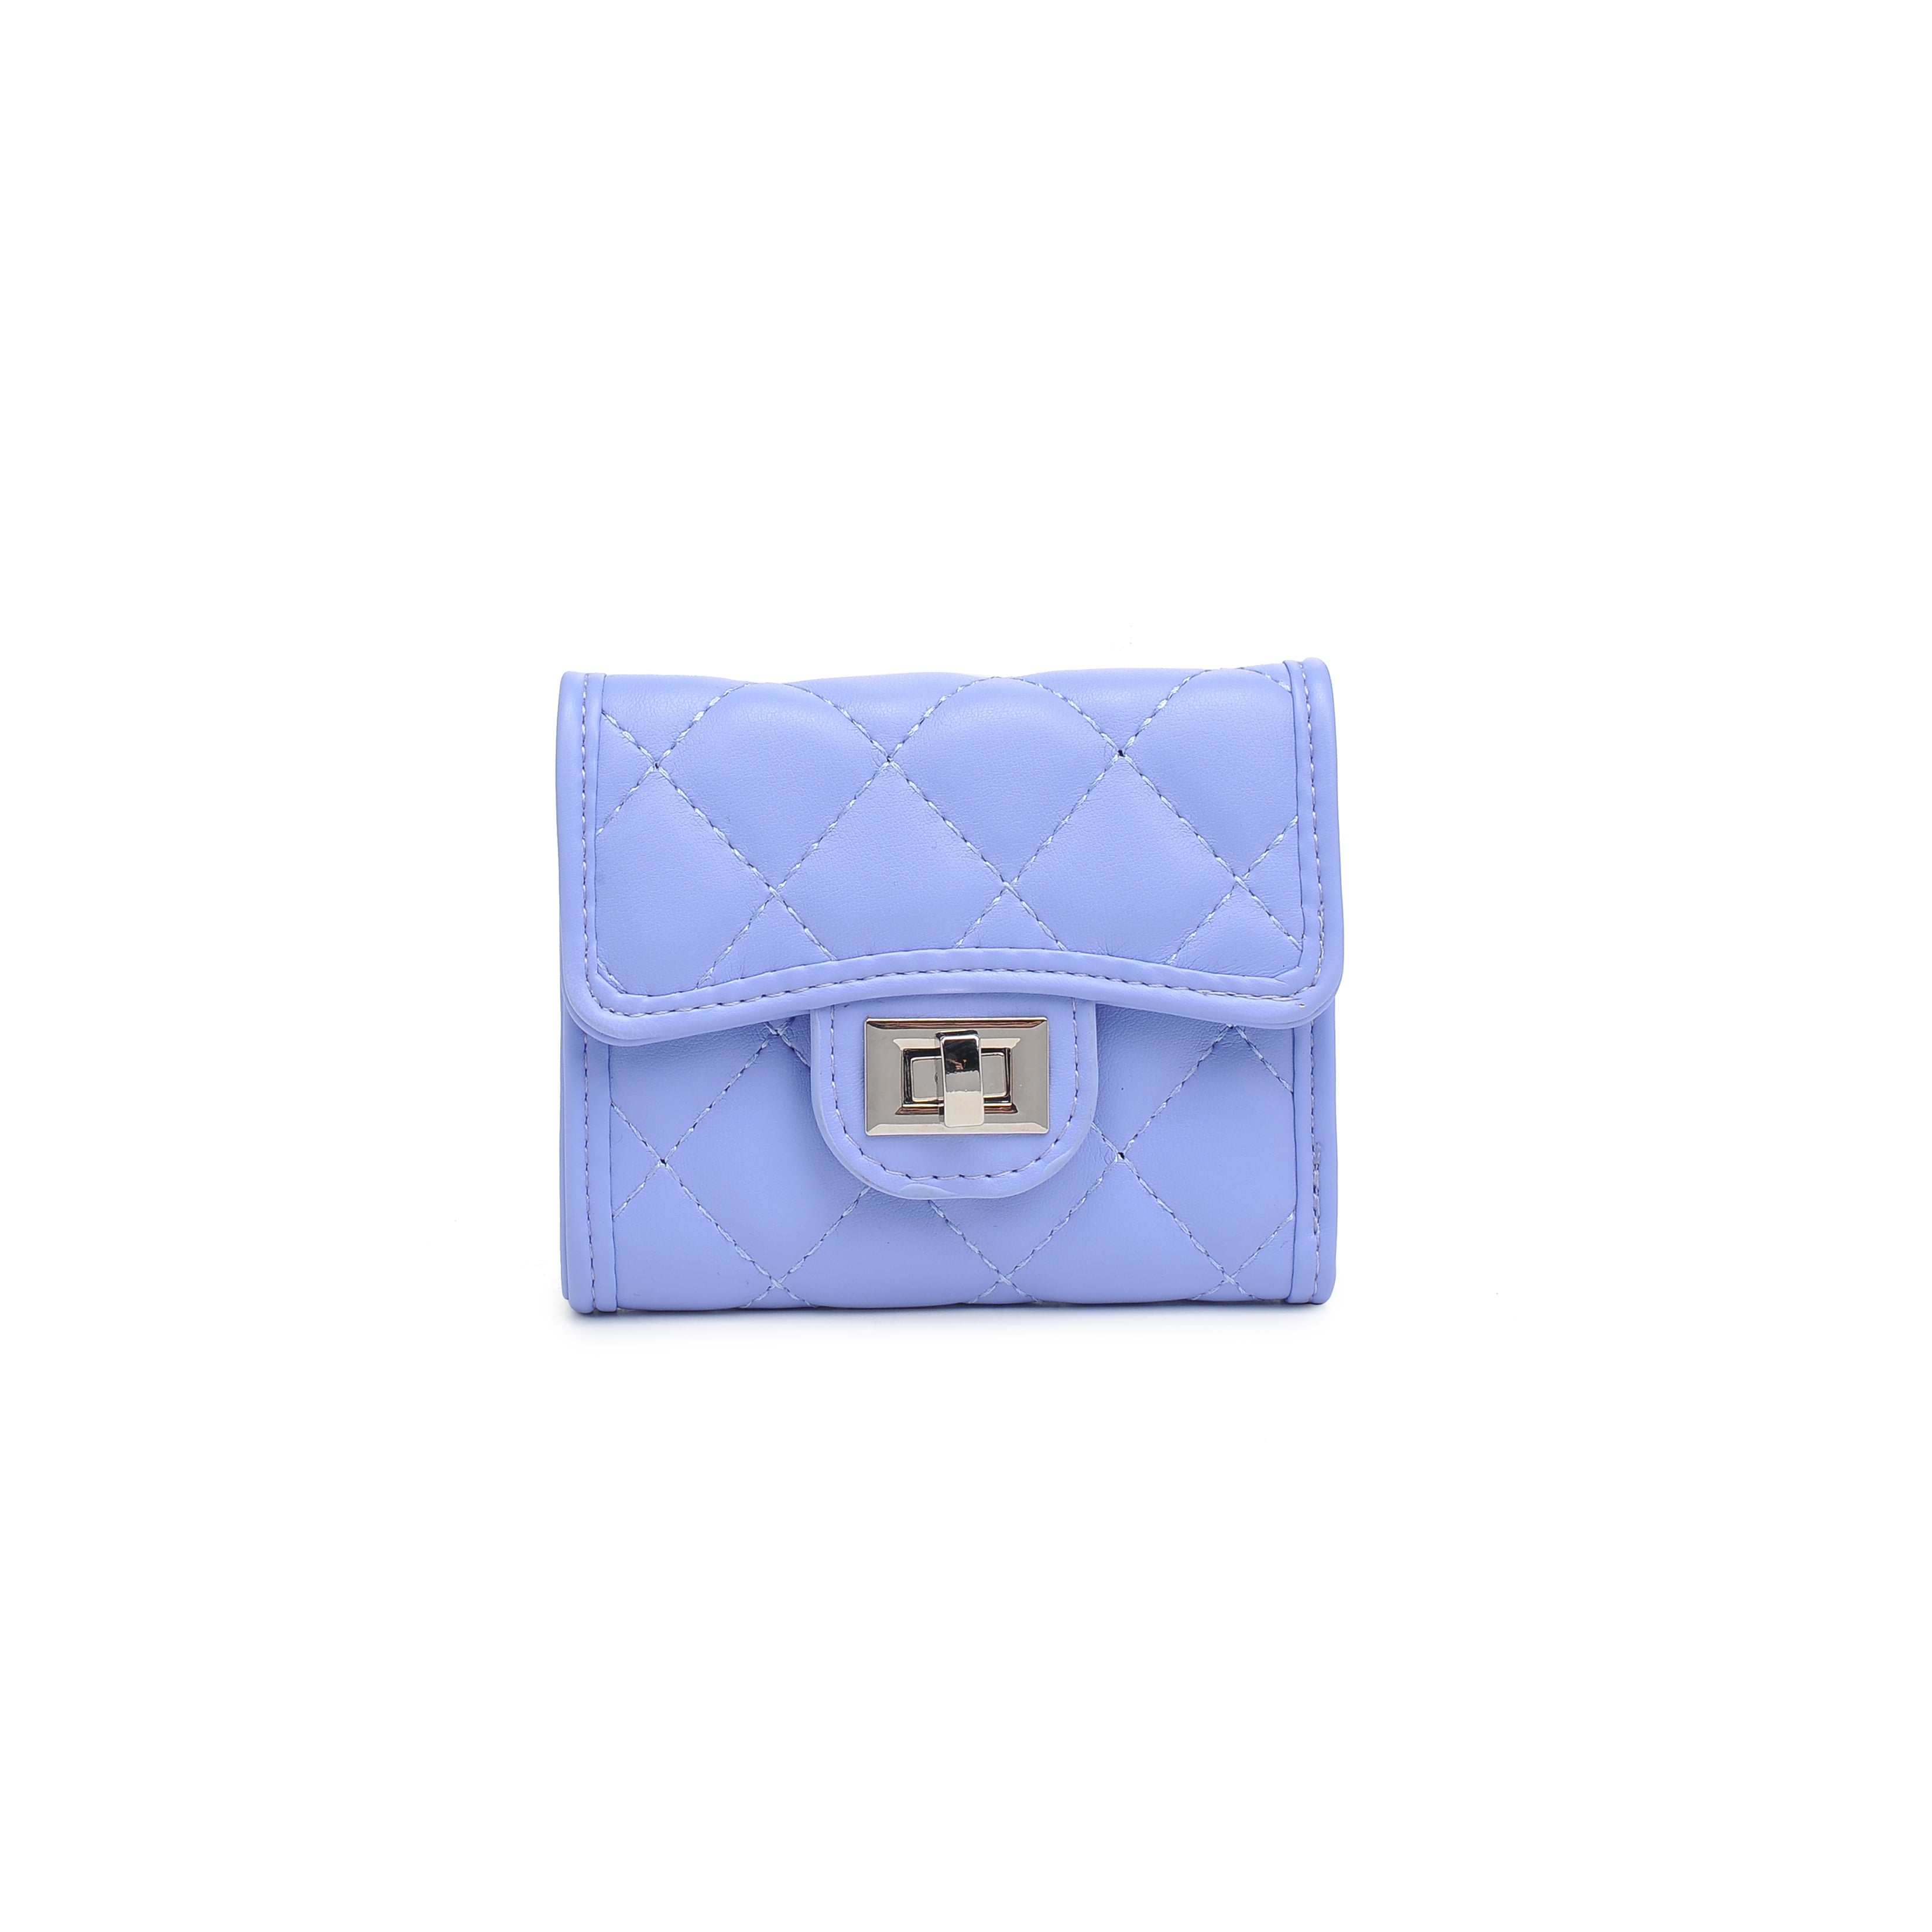 Liz Claiborne Purse Periwinkle 2 Handle Blue Purple Pink Shoulder Bag  Silver | eBay